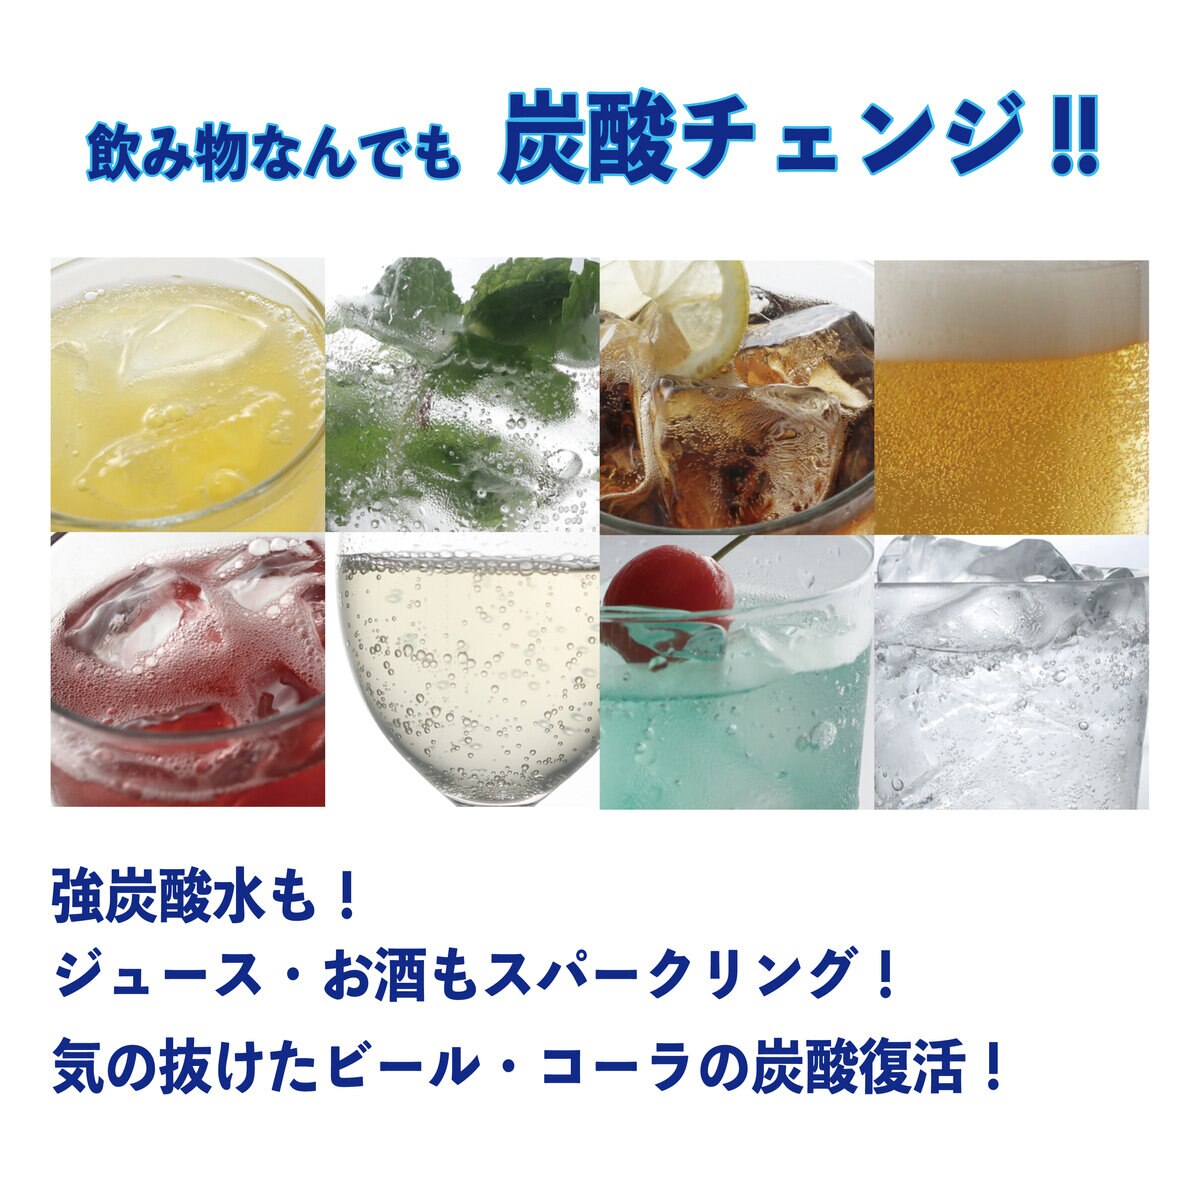 ドリンクメイト ボトル Lサイズ 3本セット | Costco Japan